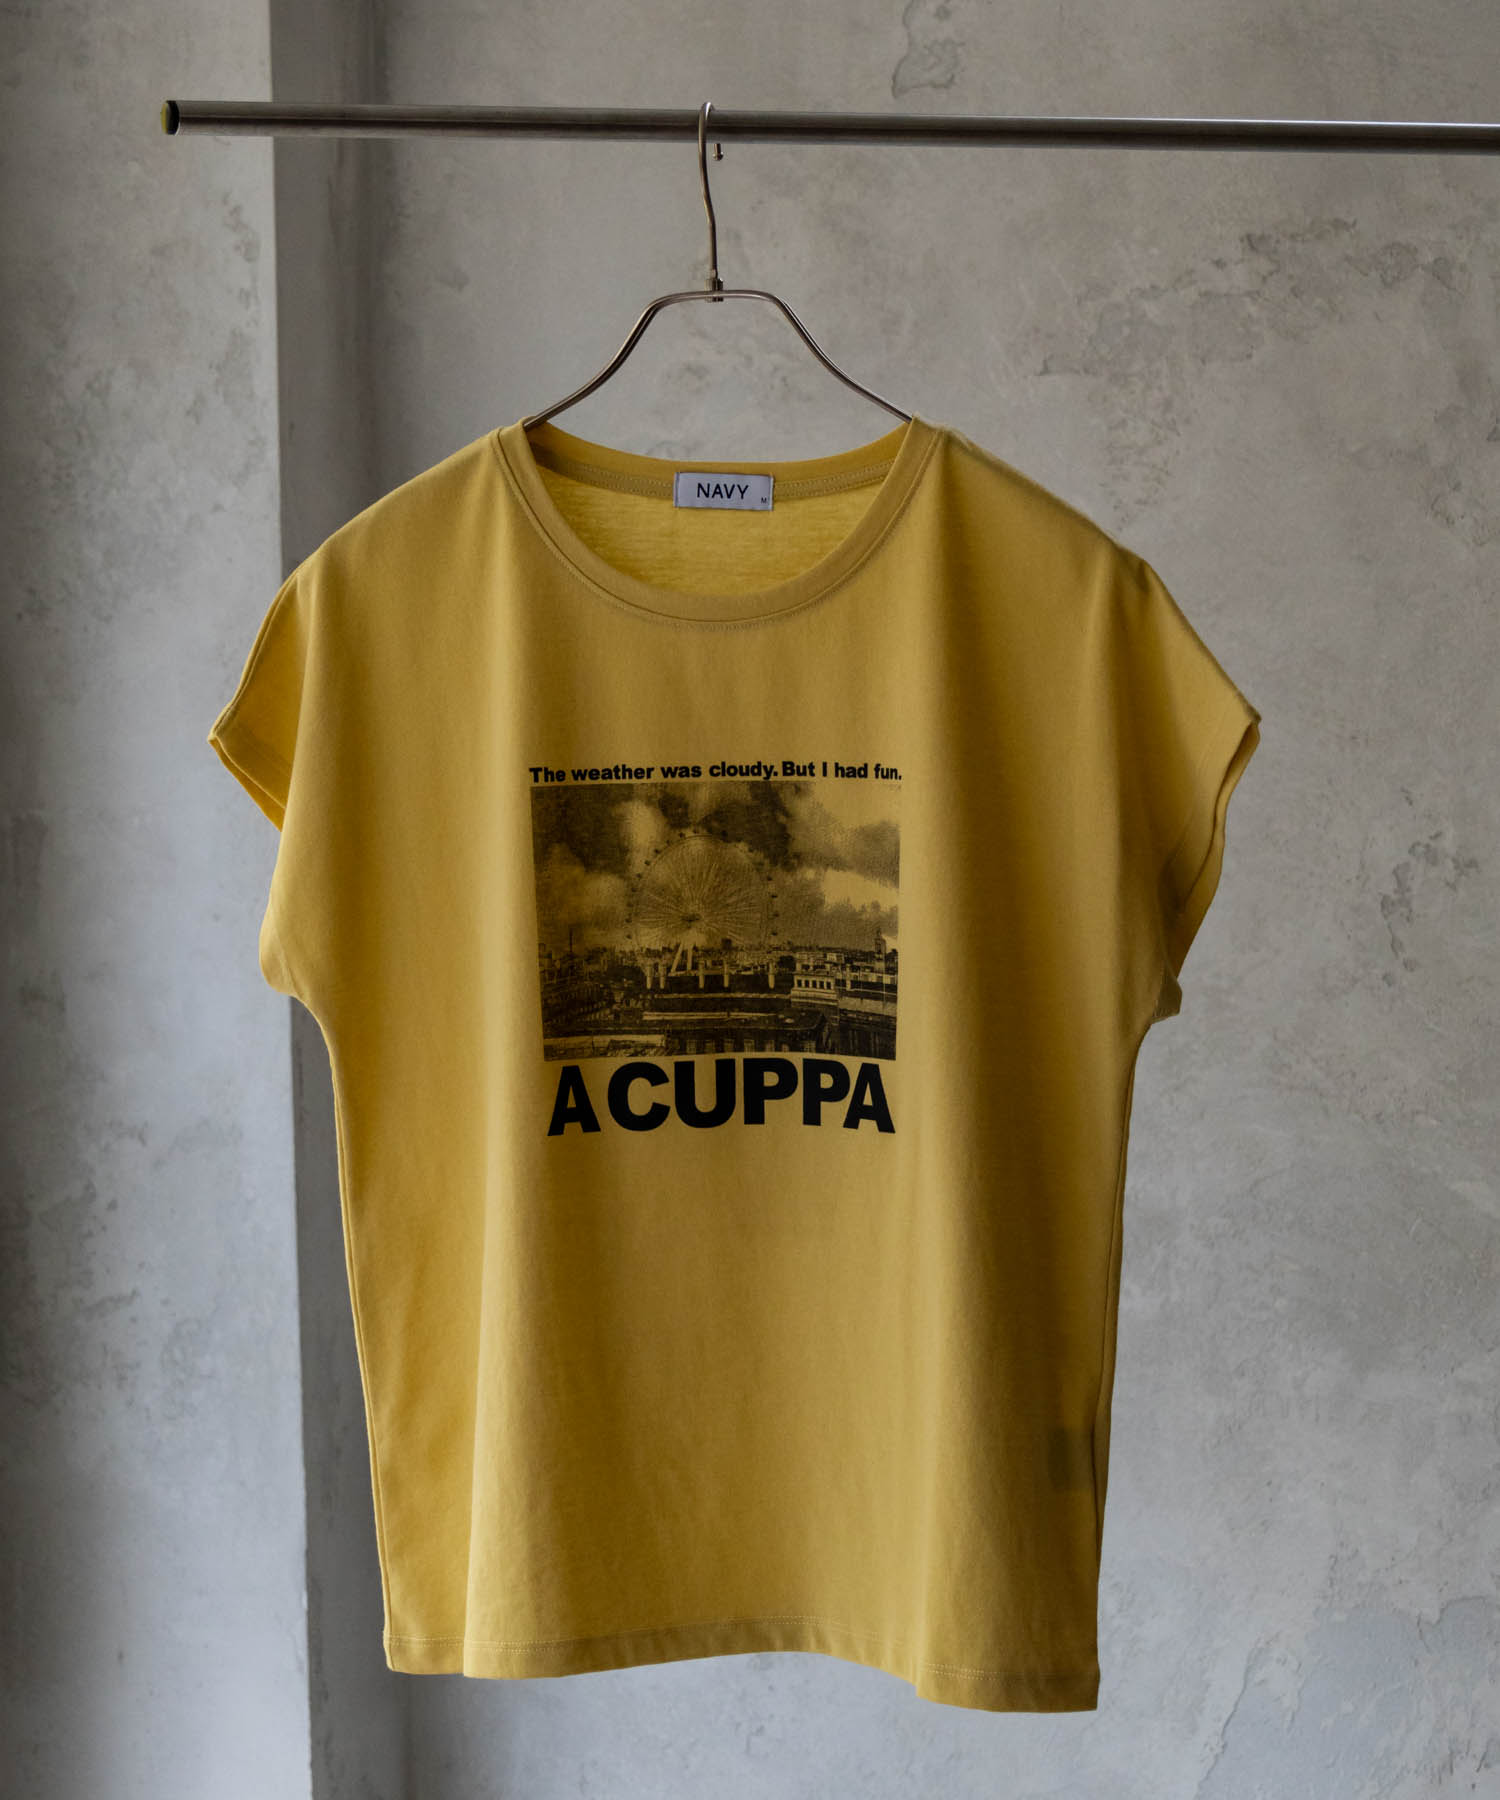 Tシャツ レディース 半袖 写真プリント クルーネック カットソー トップス ネコポス対応